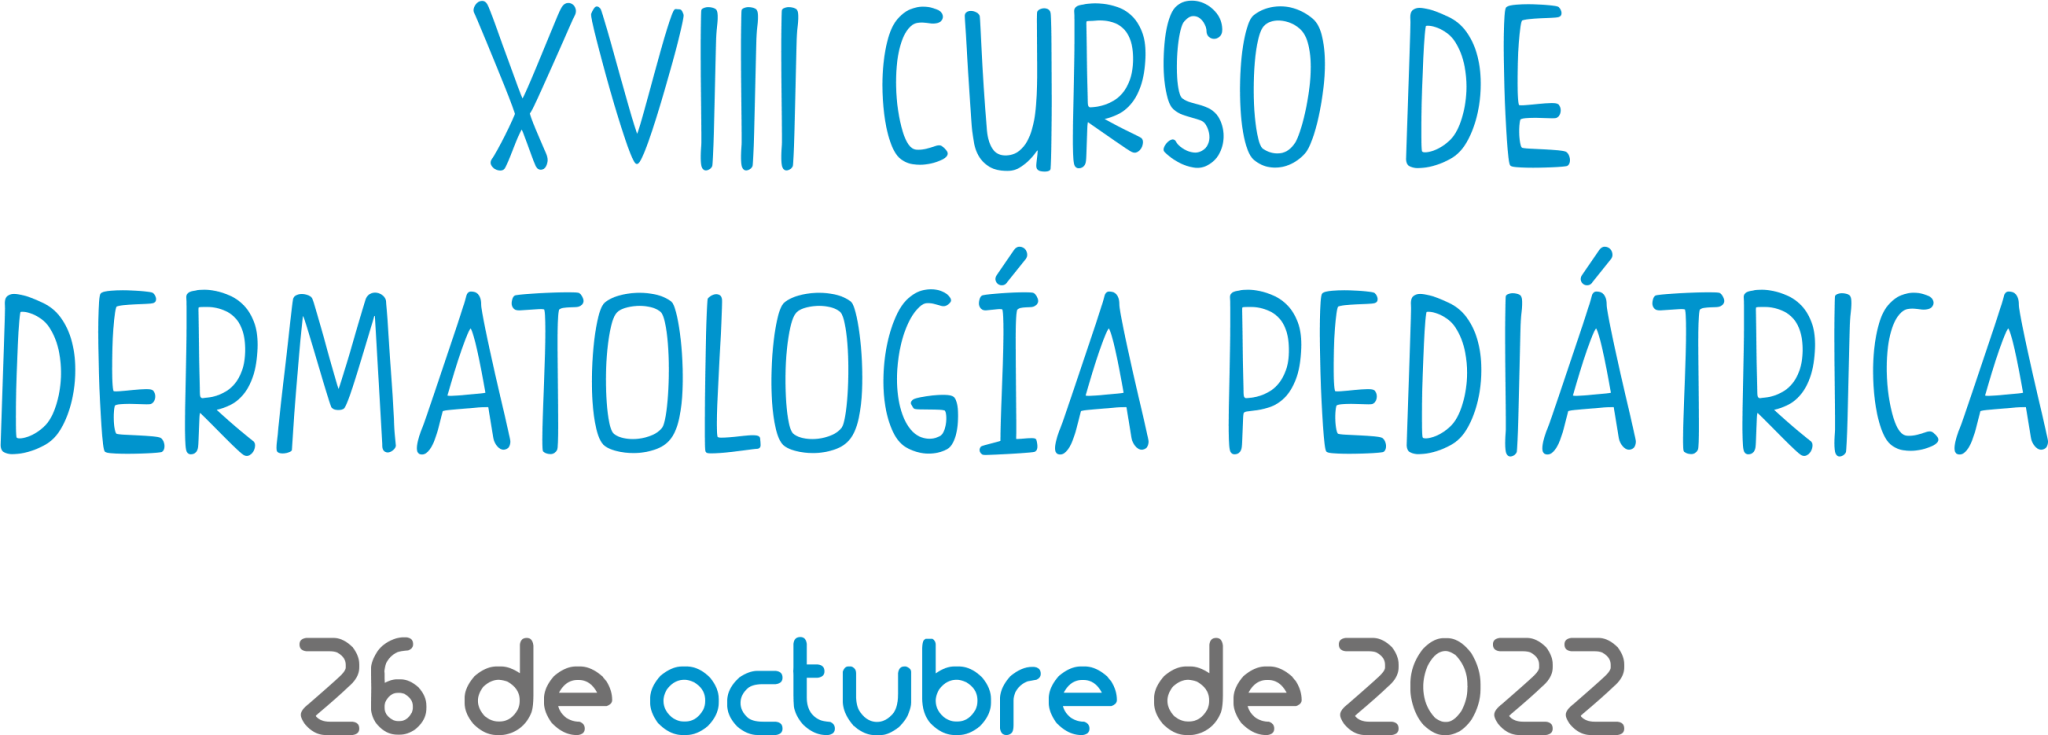 XVIII Curso de Dermatología Pediátrica